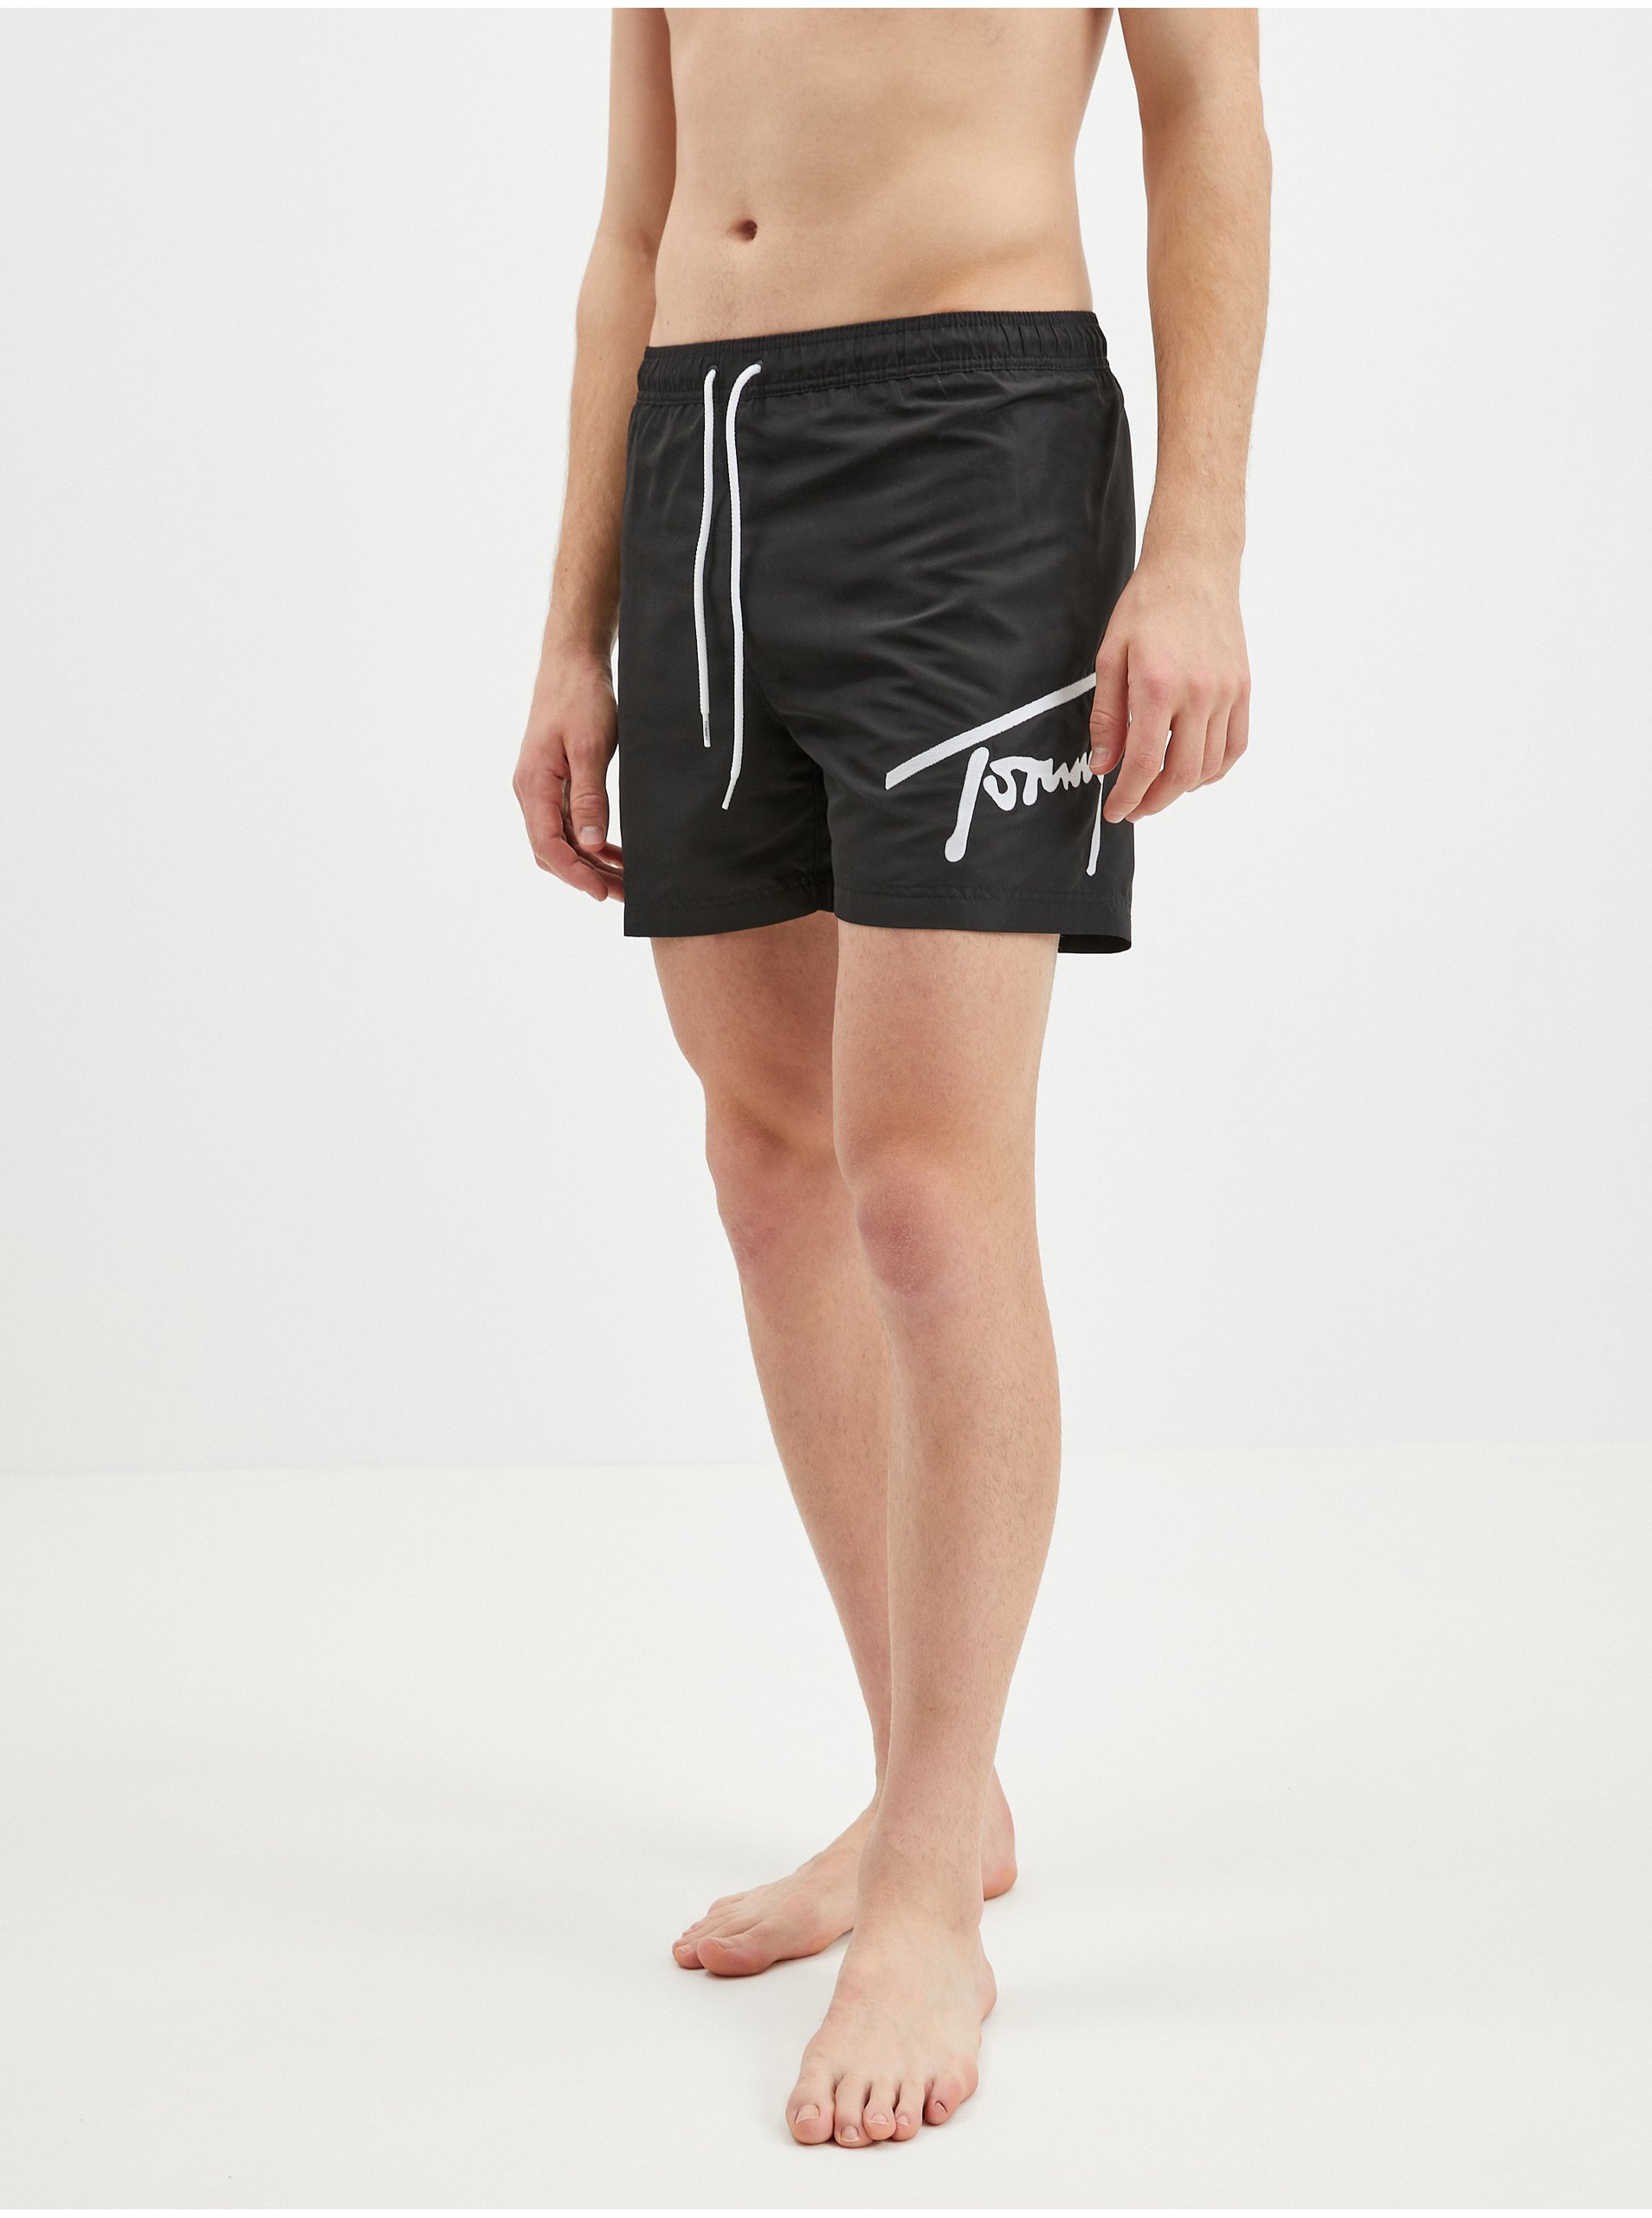 E-shop TJ SIGNATURE-SF MEDIUM DRAWSTRING Tommy Hilfiger Underwear